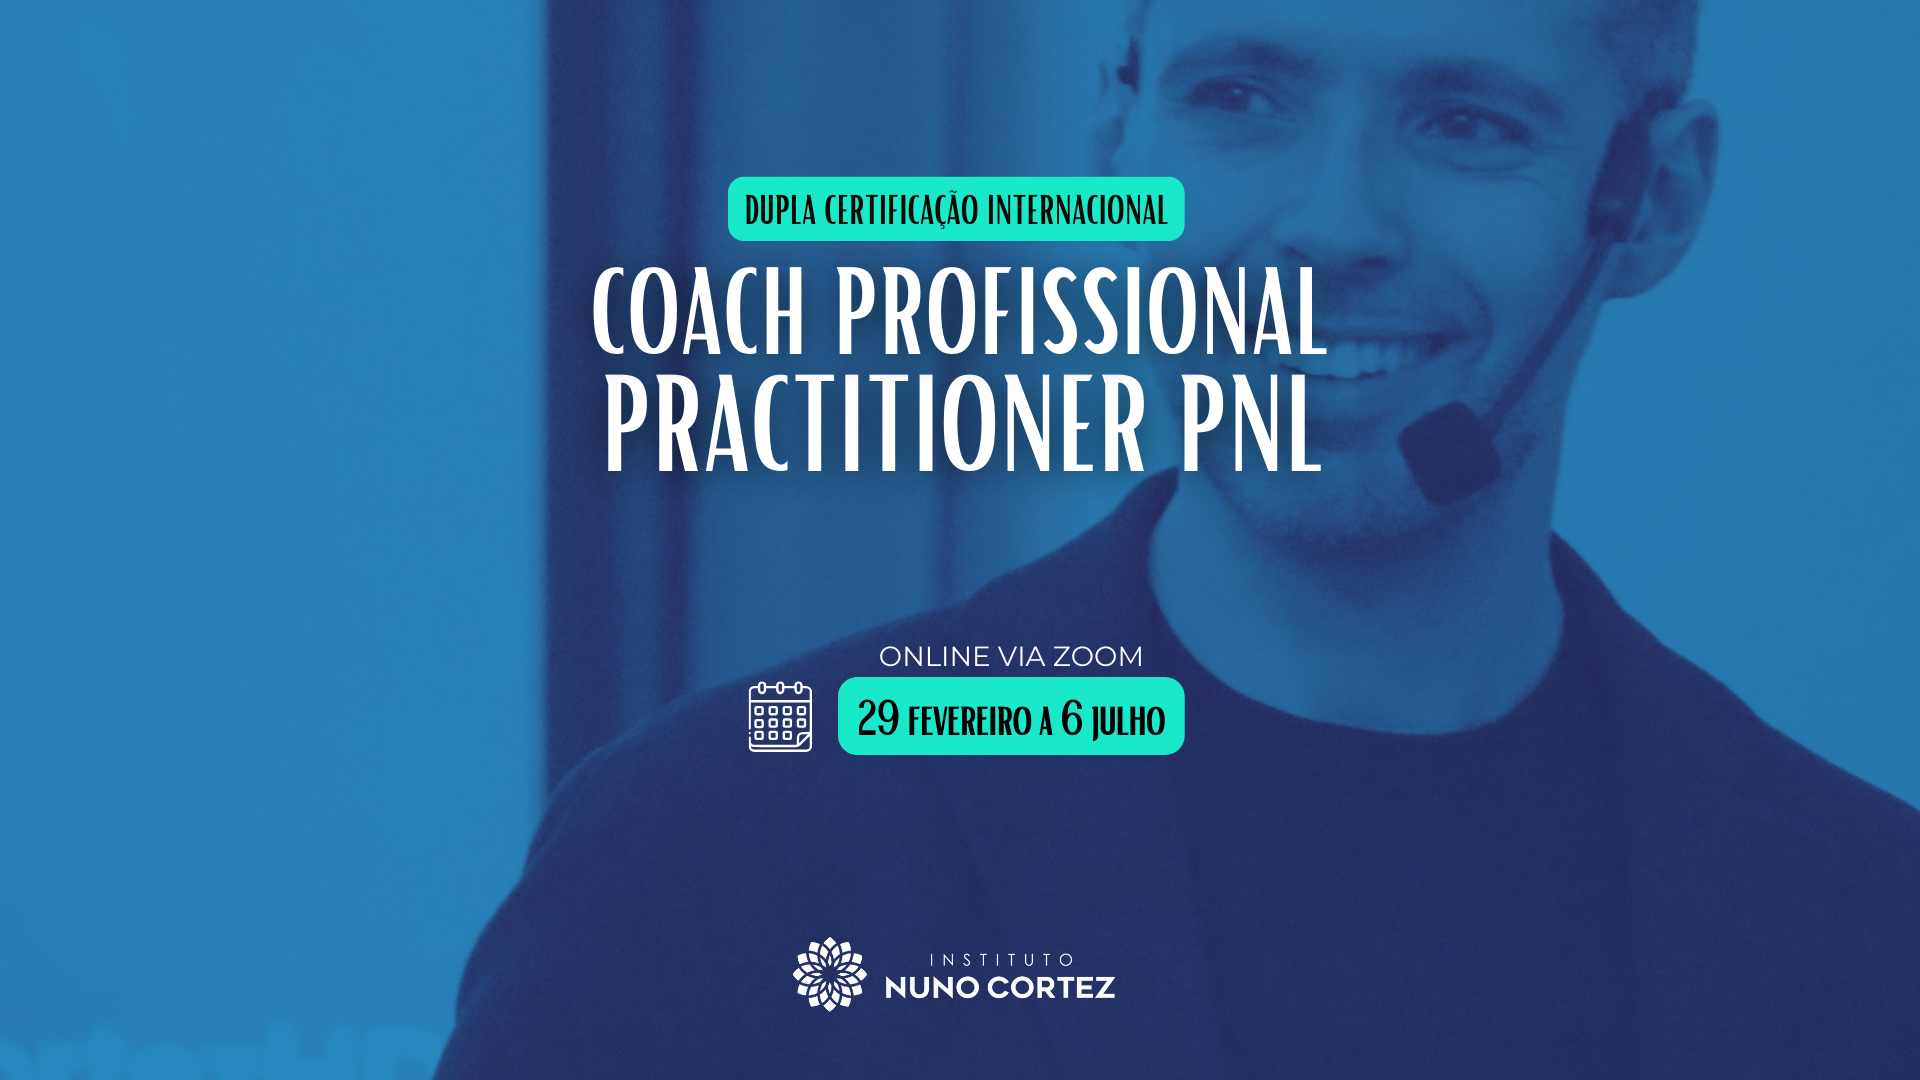 Coach Profissional Practitioner PNL